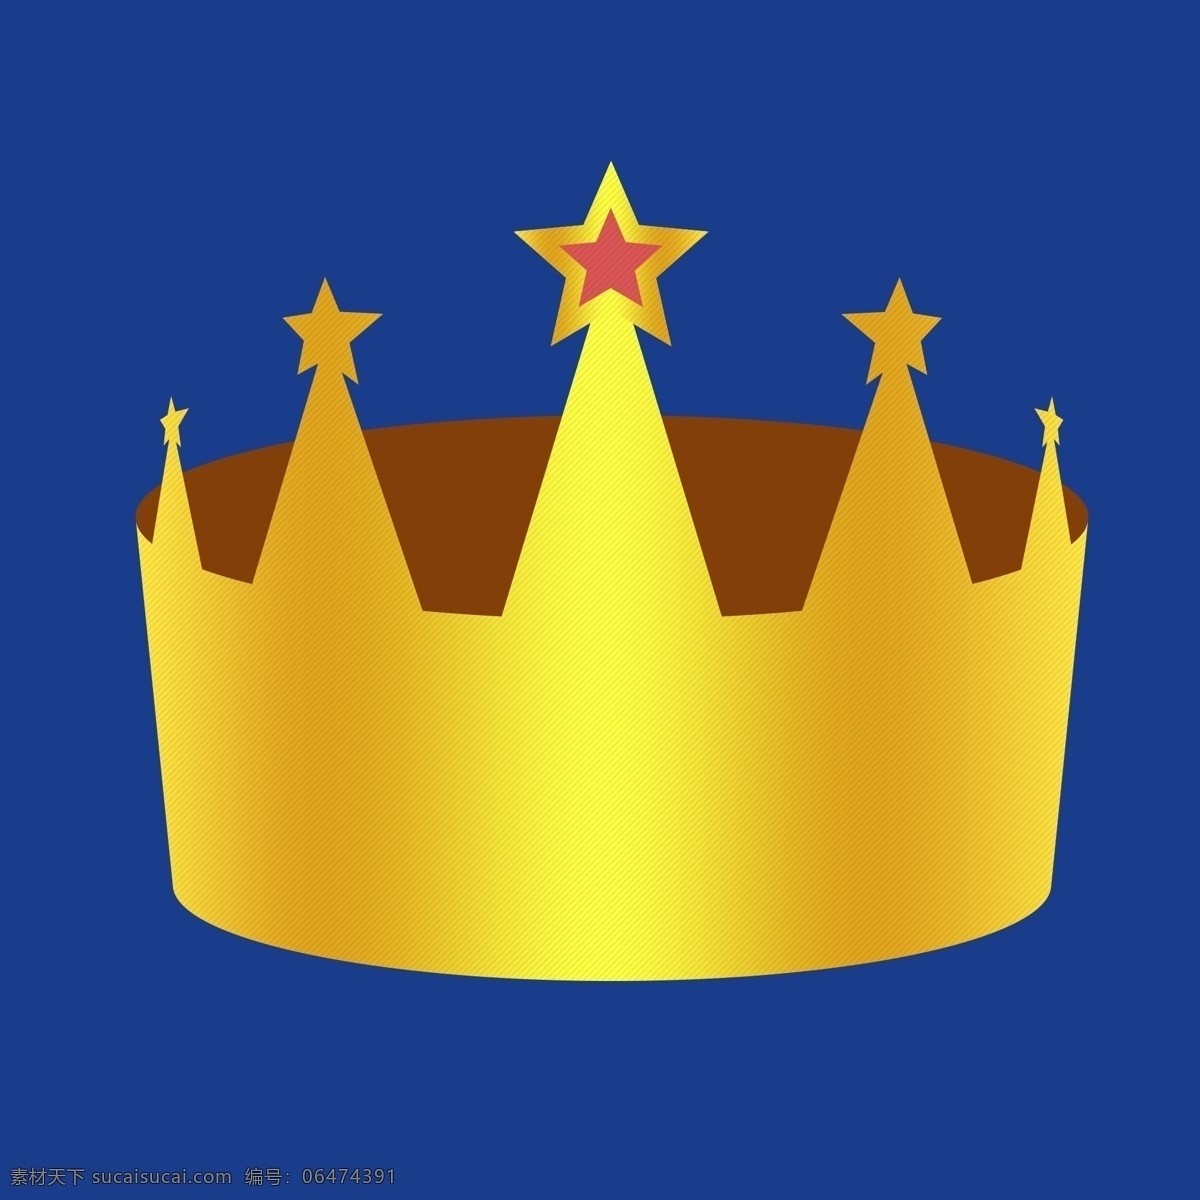 金黄色 头 戴 五角星 皇冠 图标 头戴 立体 至高荣耀 皇室贵族 vip 会员 色彩渐变 沉甸甸